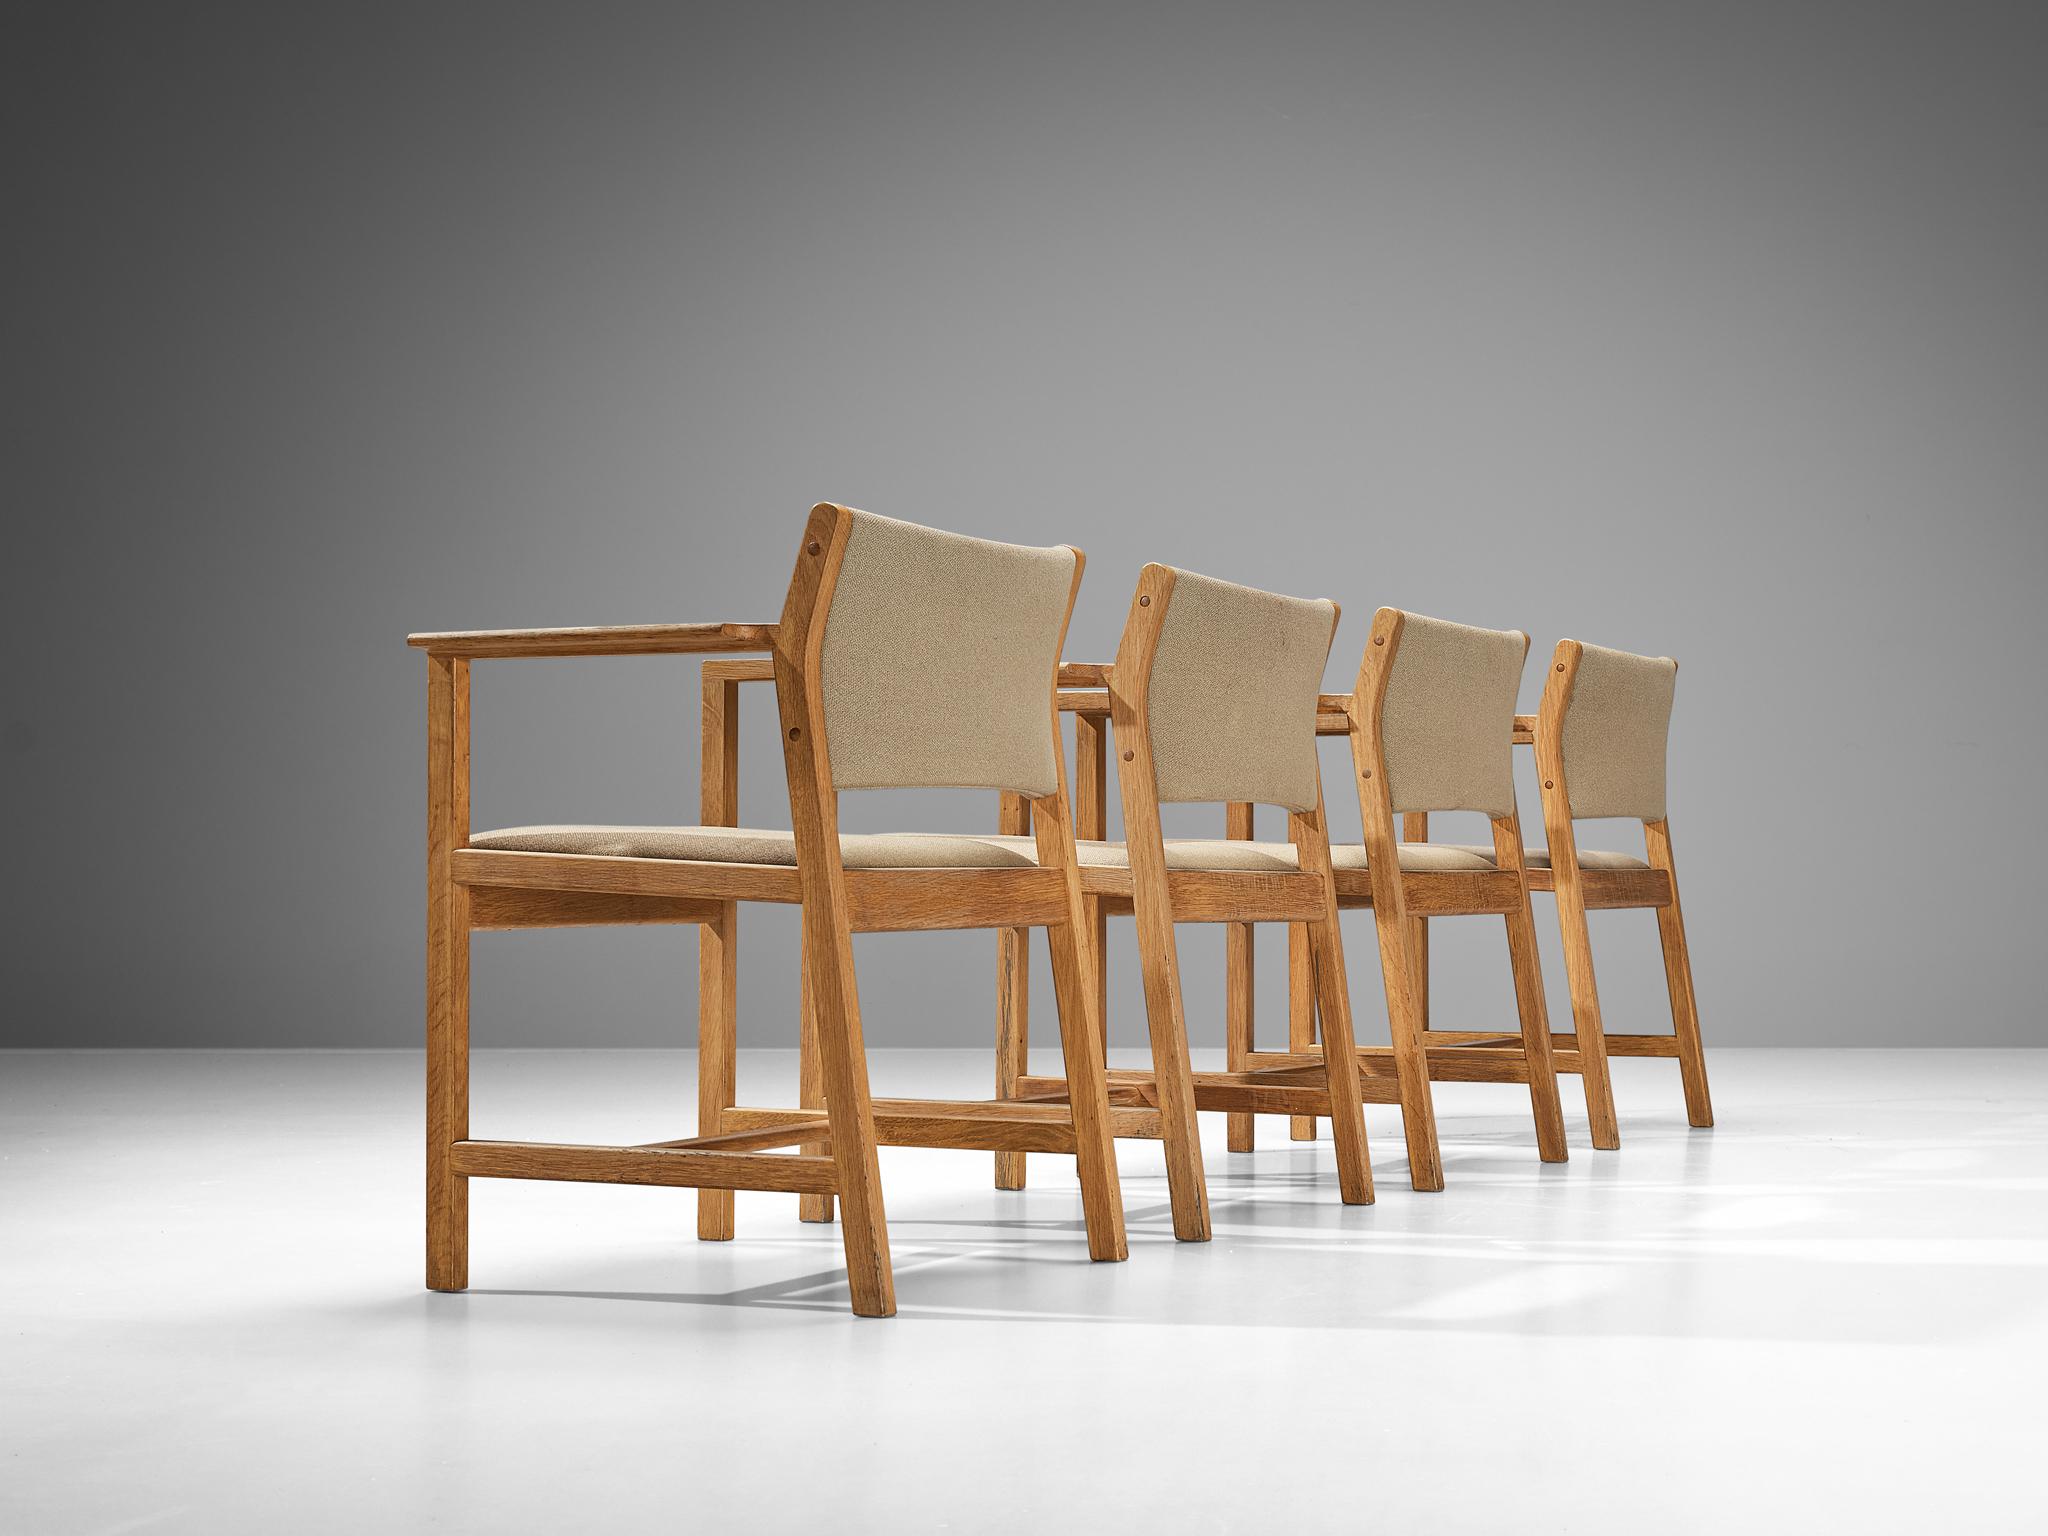 Staten Kontrol Møbler, fauteuils, chêne, tissu, Danemark, années 1960. 

Ensemble de quatre fauteuils danois fabriqués par Staten Kontrol Møbler. Ce modèle à l'assise arrondie est doté d'un cadre sculptural caractéristique. Les pieds arrière